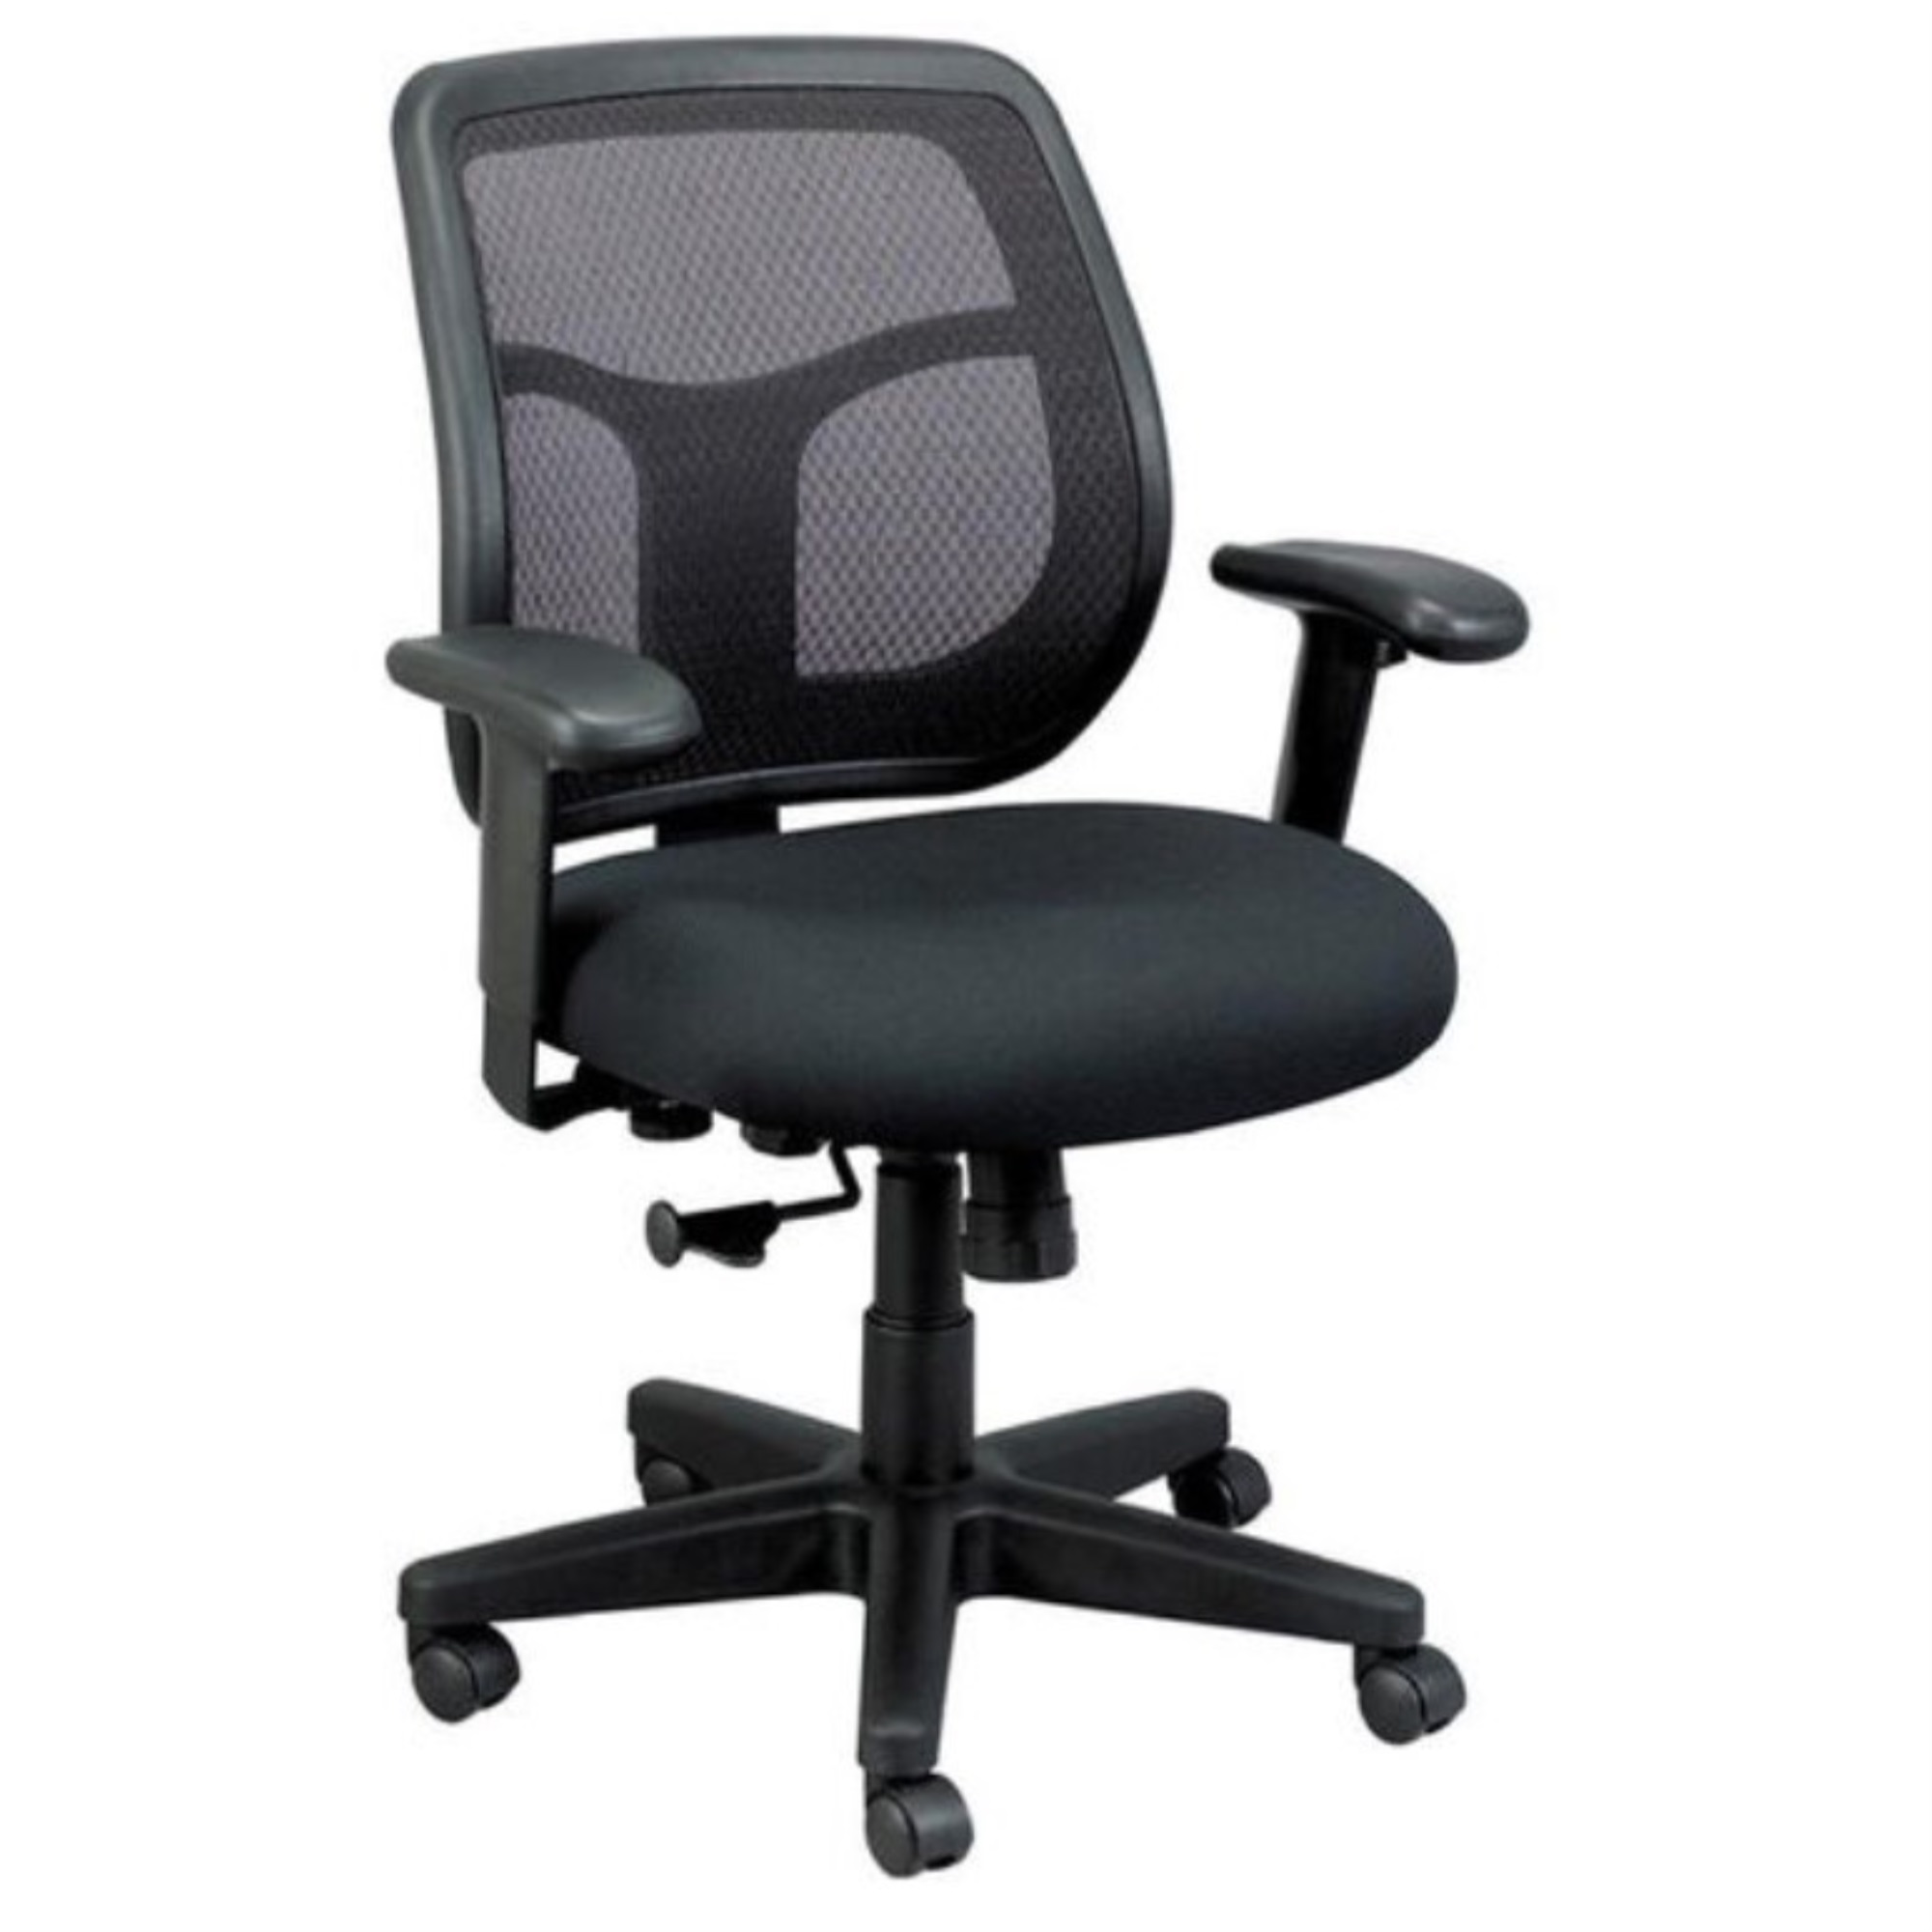 26" x 30" x 36" Black Mesh Fabric Chair